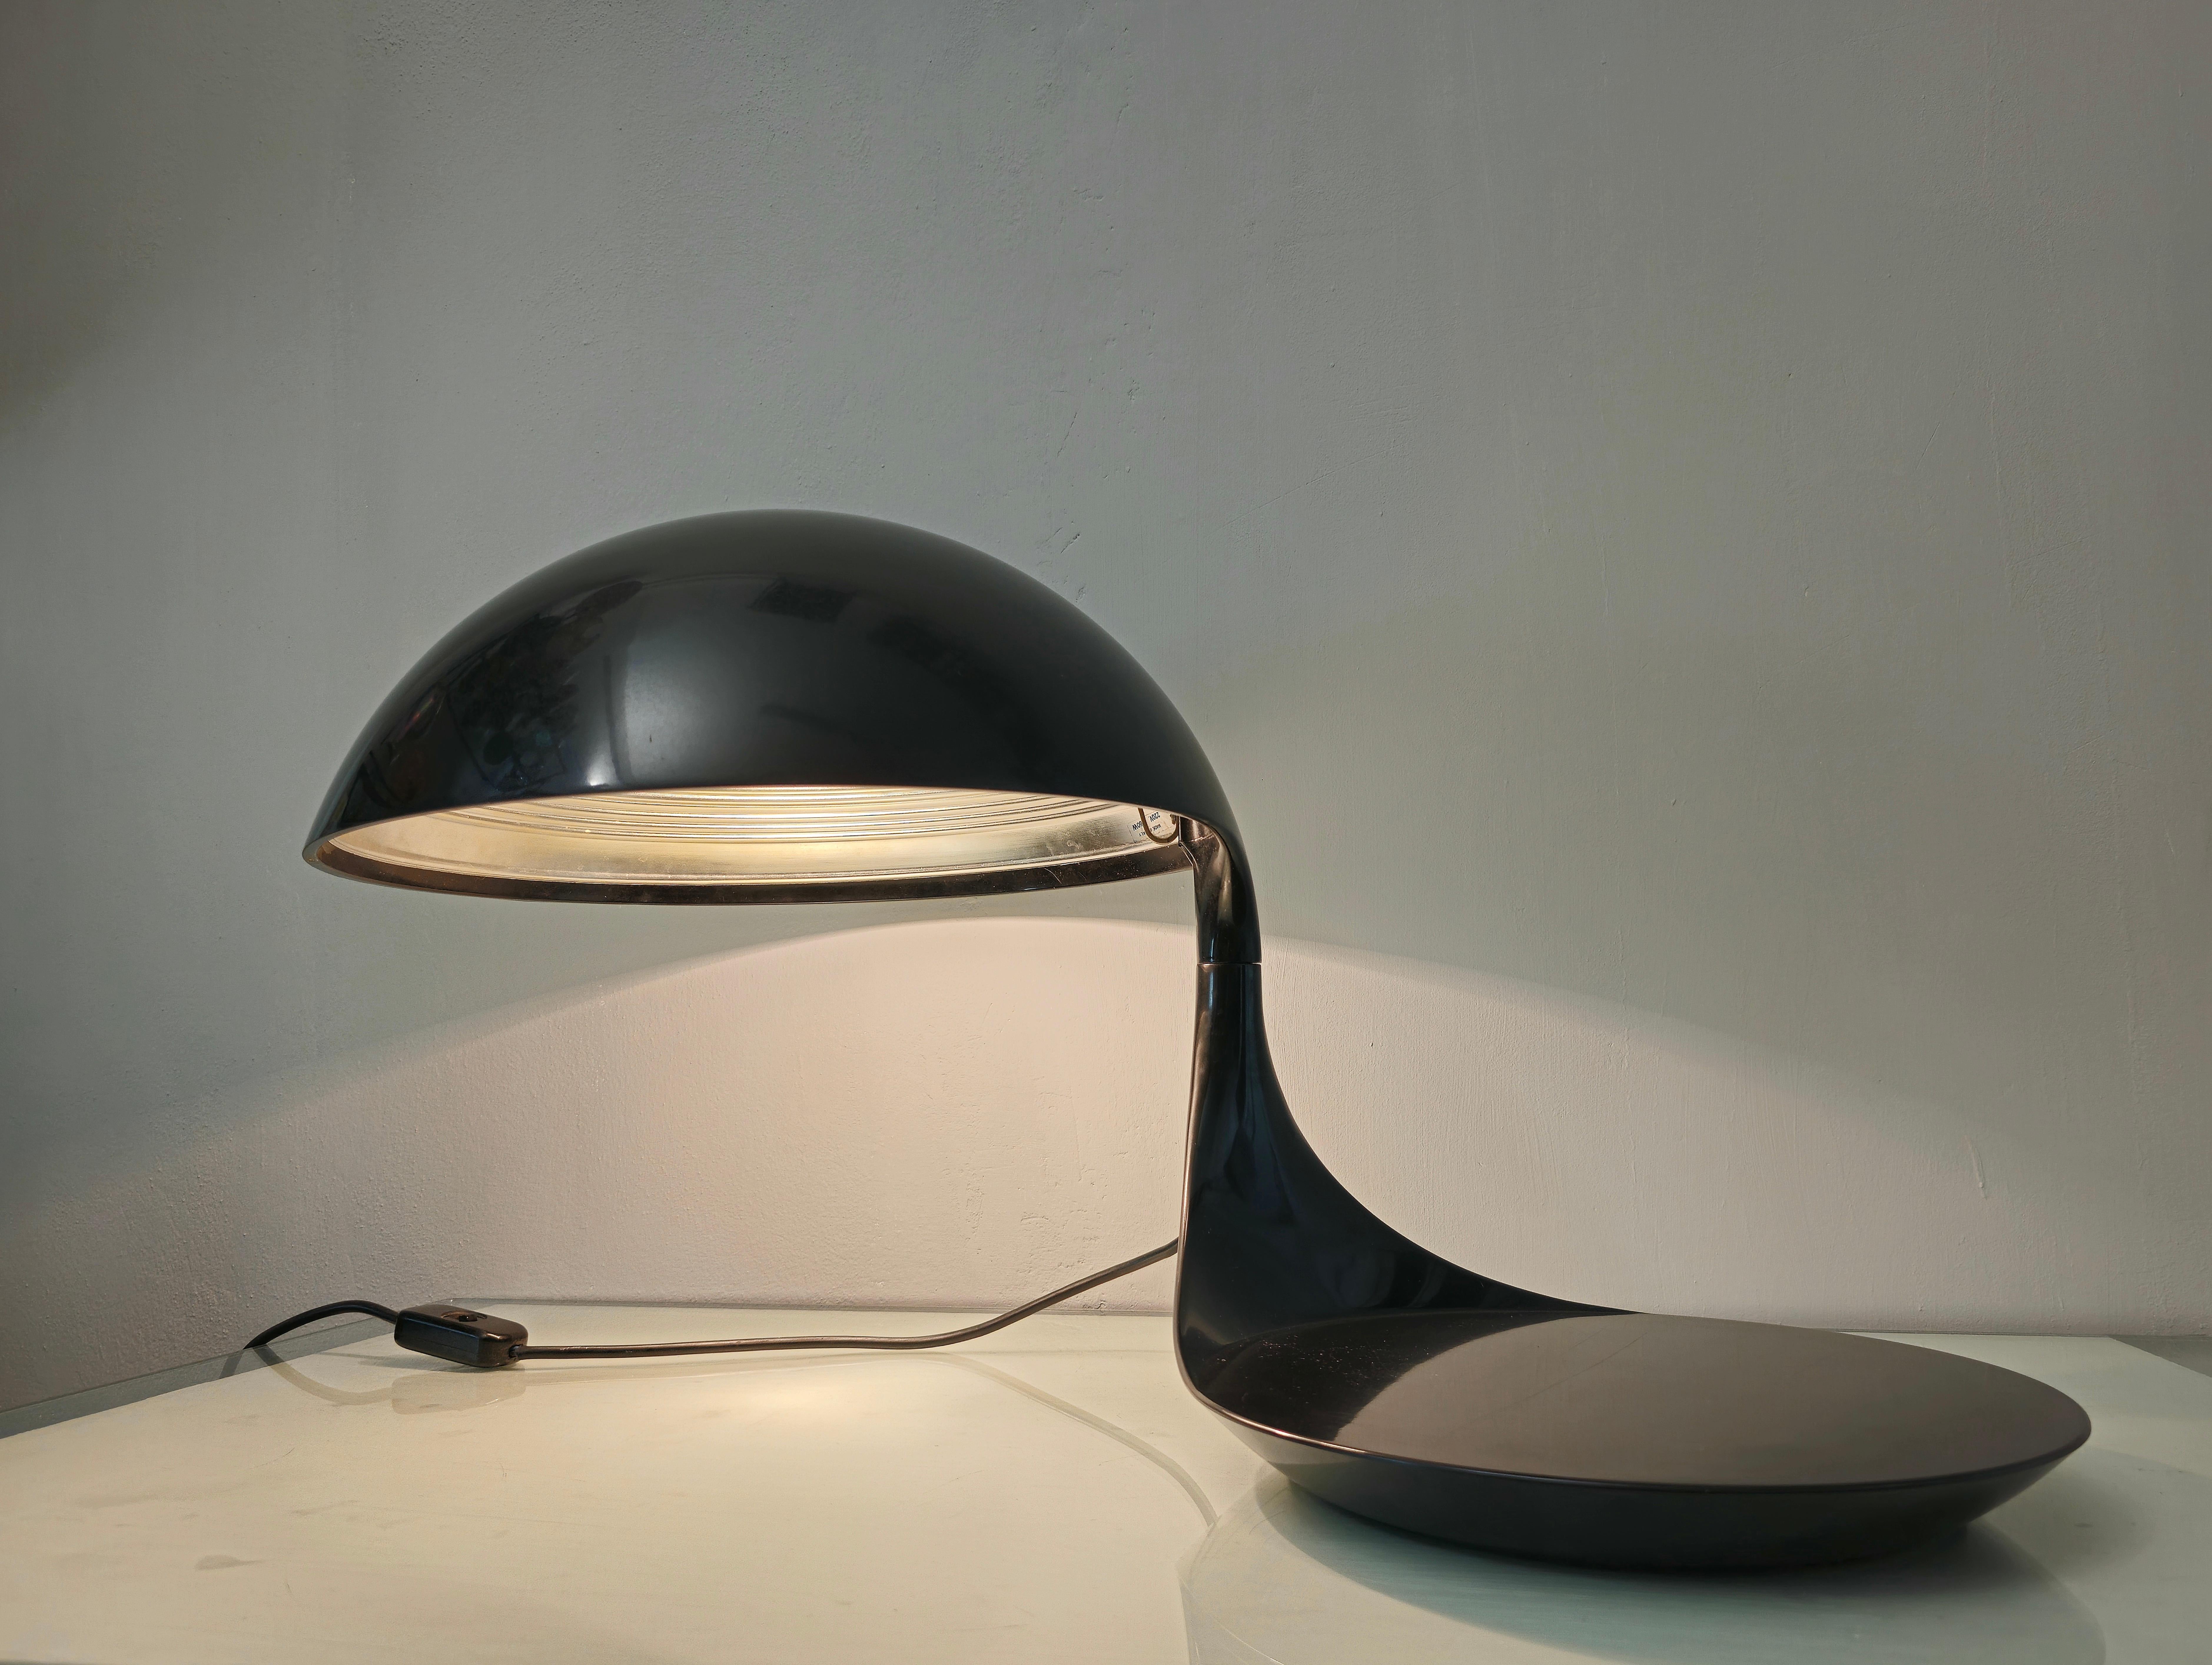 Tisch- oder Schreibtischleuchte Modell Cobra 629, entworfen von Elios Martinelli und in den 60er/70er Jahren von Martinelli luce hergestellt.
Die Lampe wurde aus Harz in der Farbe Schwarz hergestellt, der obere Teil der Lampe ist um 360° drehbar, so